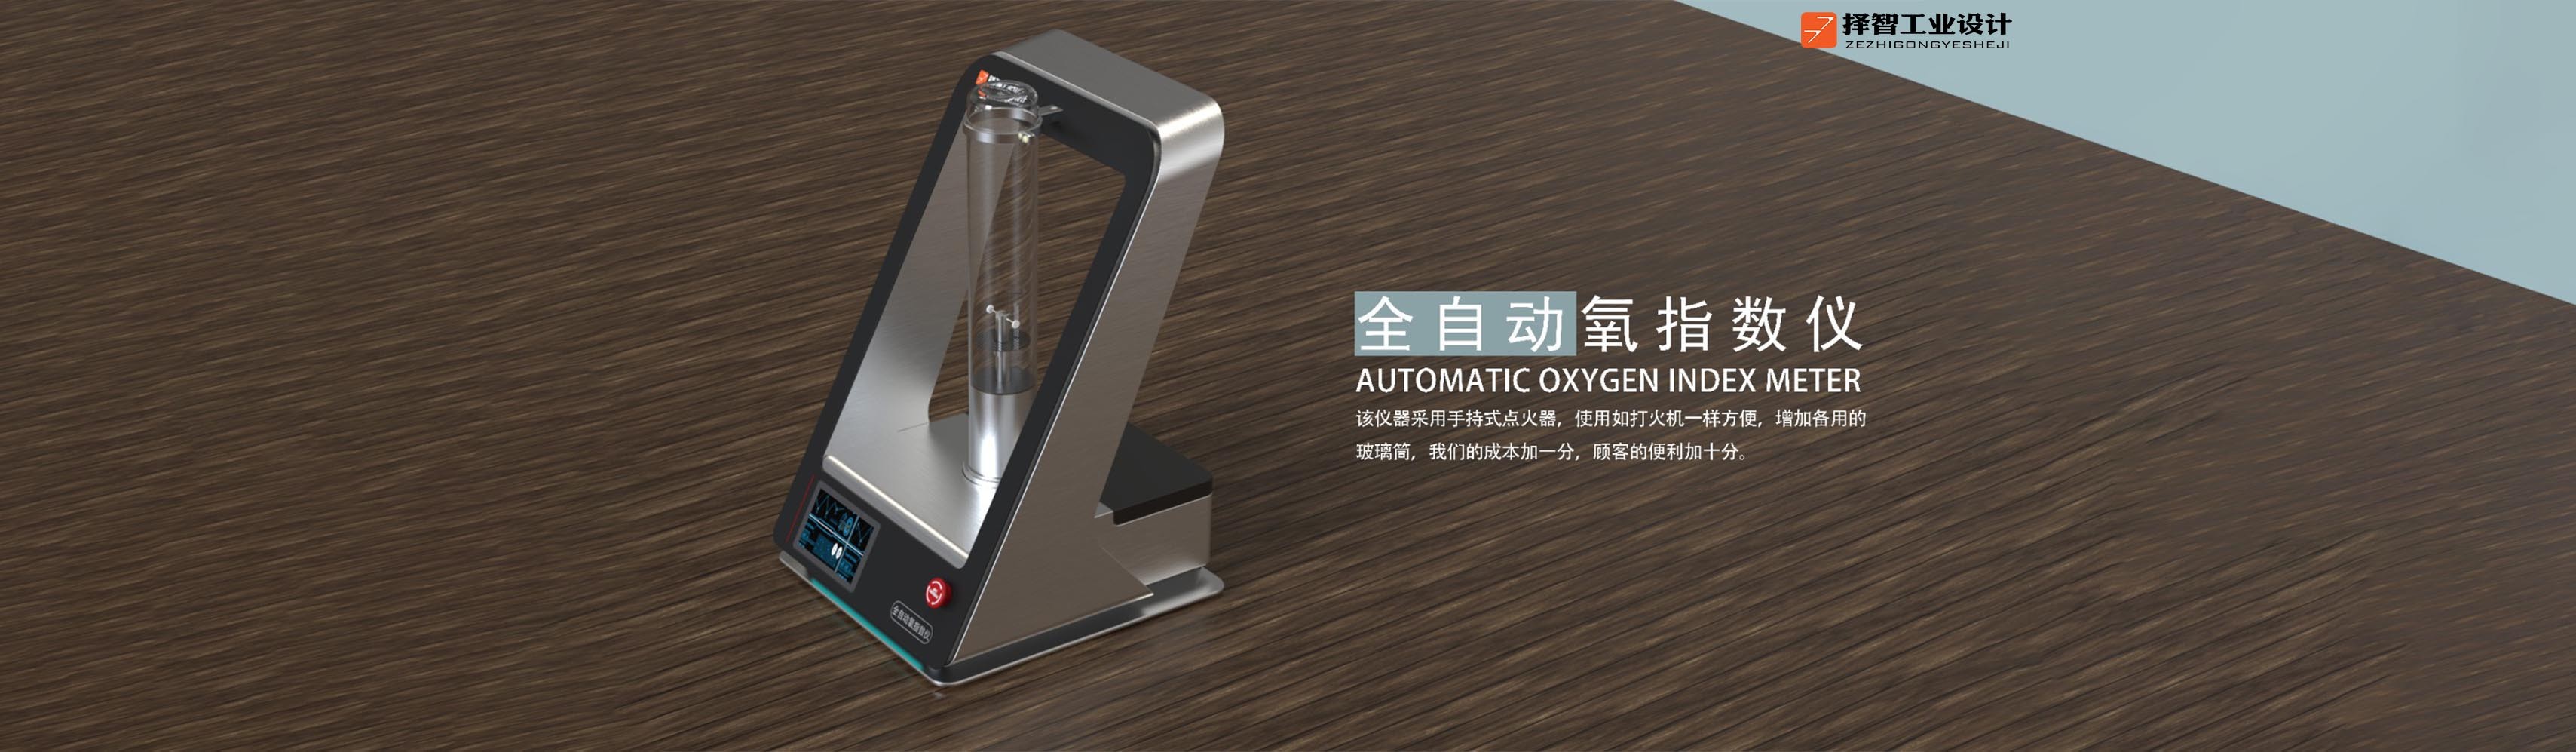 上海苏州产品设计 工业产品外观设计 结构设计 全自动氧指数仪外观设计